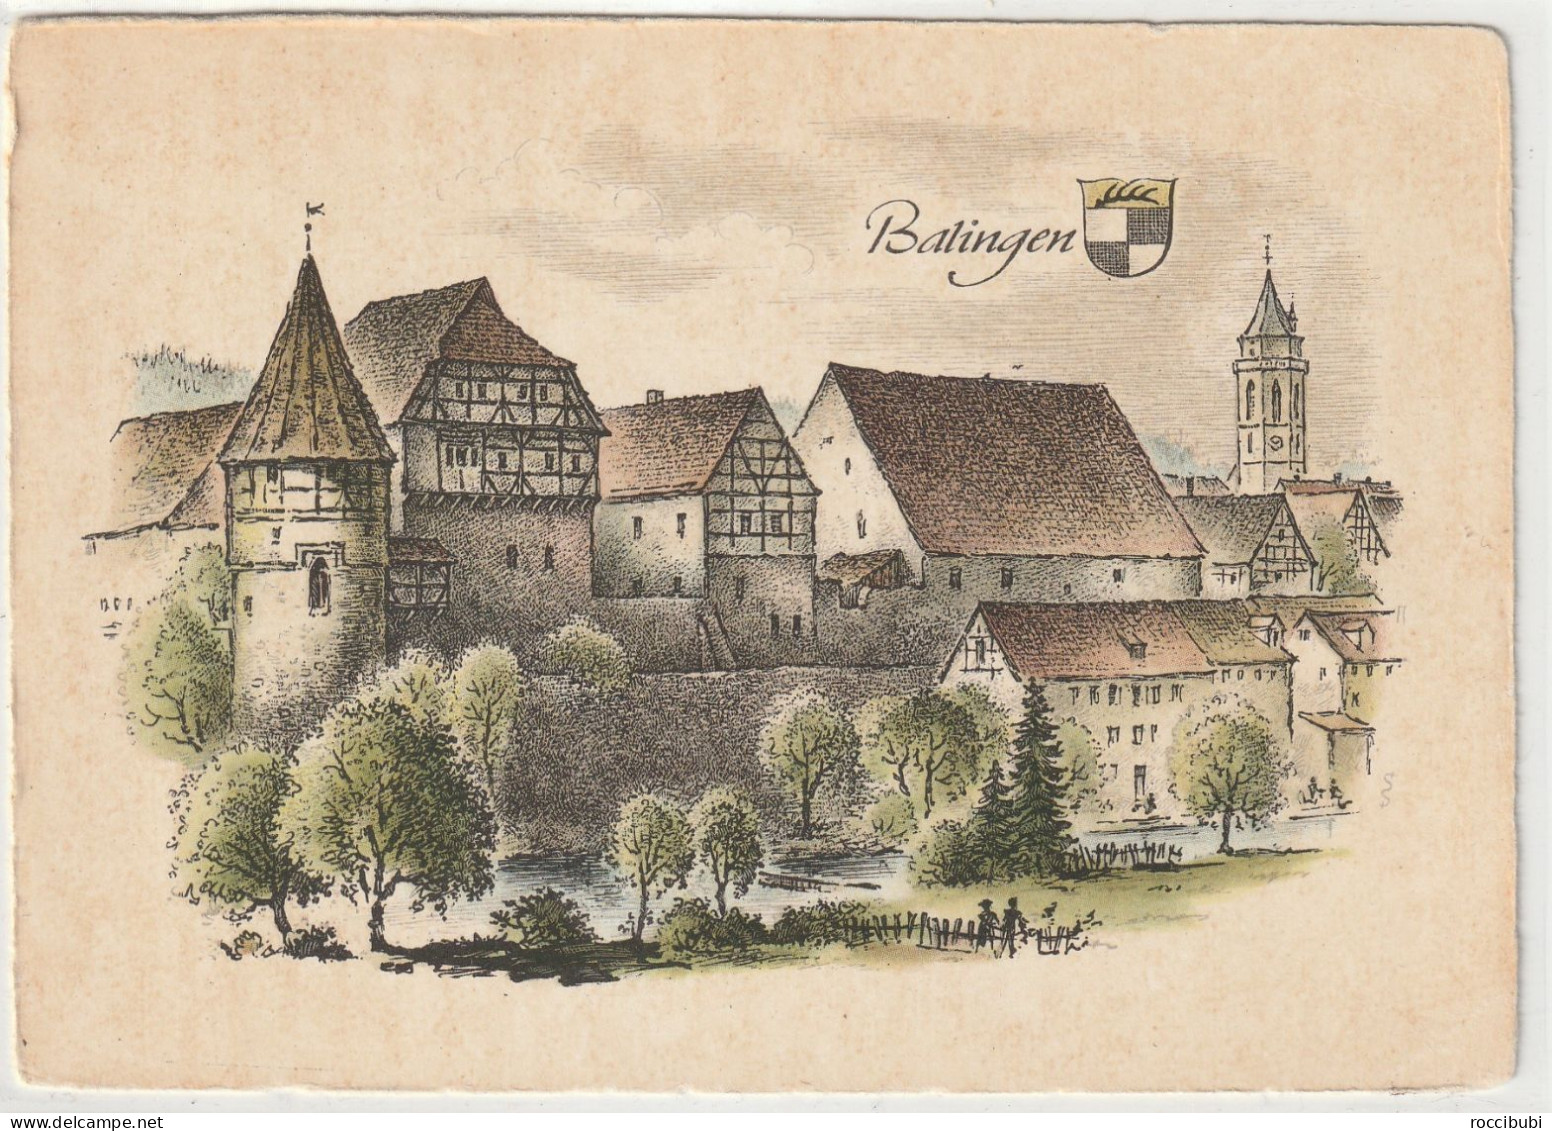 Balingen, Baden-Württemberg - Balingen